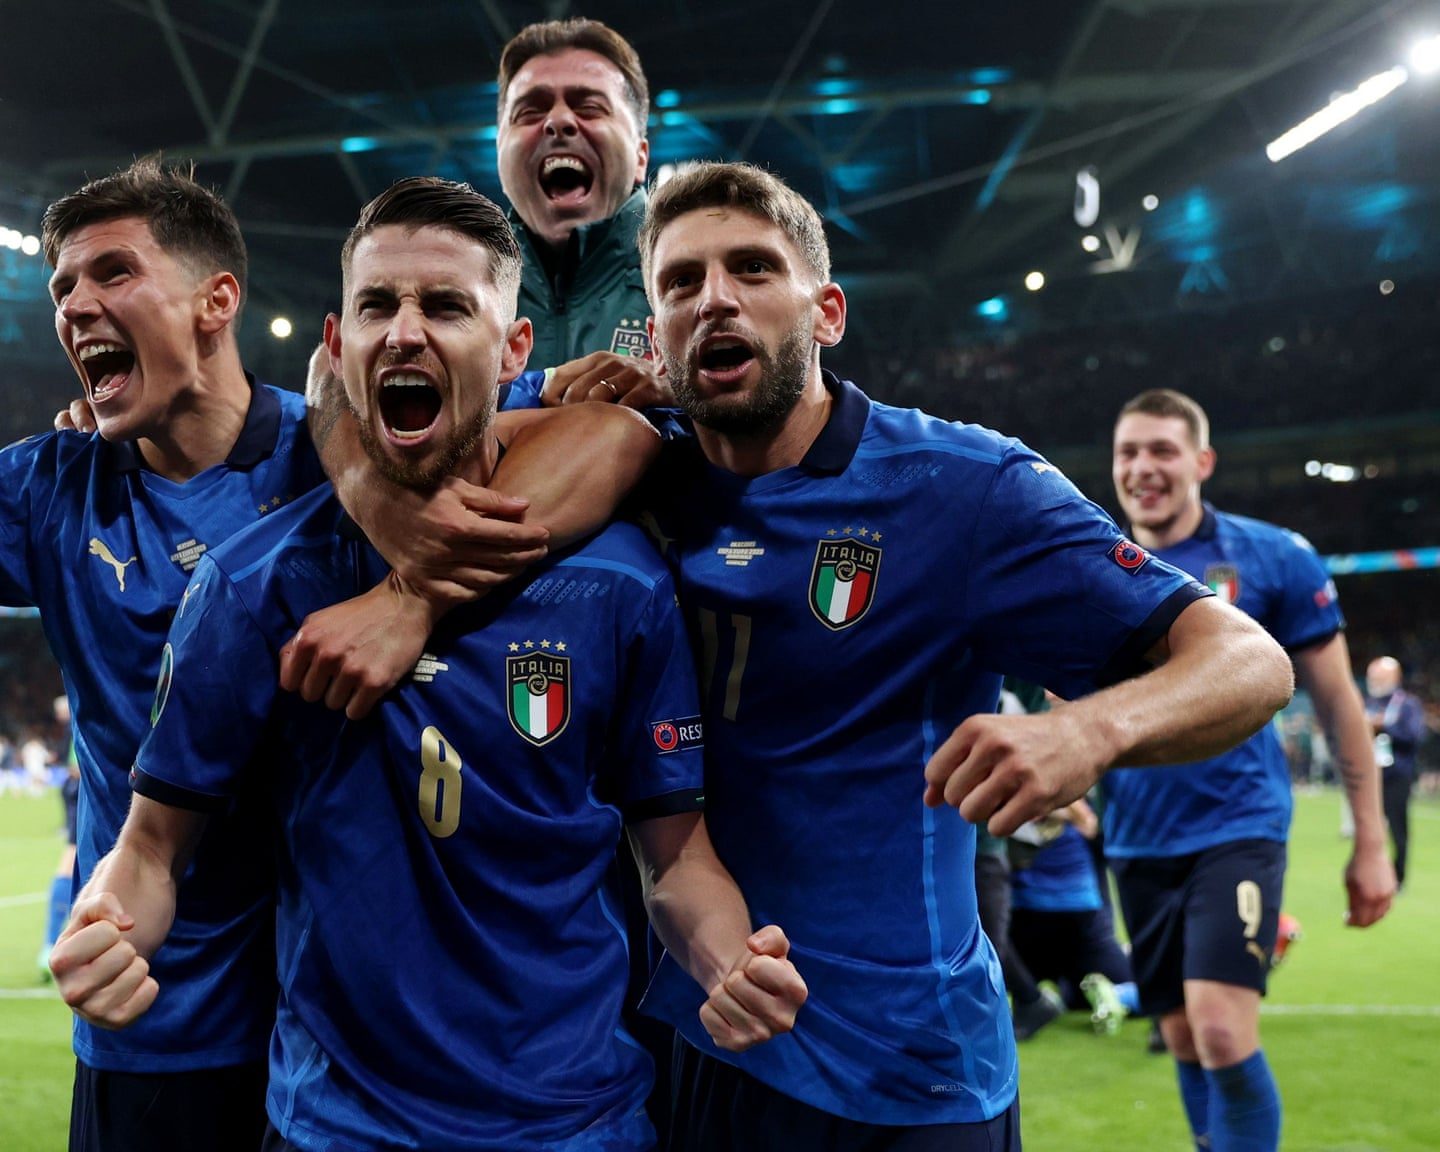 Italy đã hạ Tây Ban Nha trong trận chung kết với sự may mắn